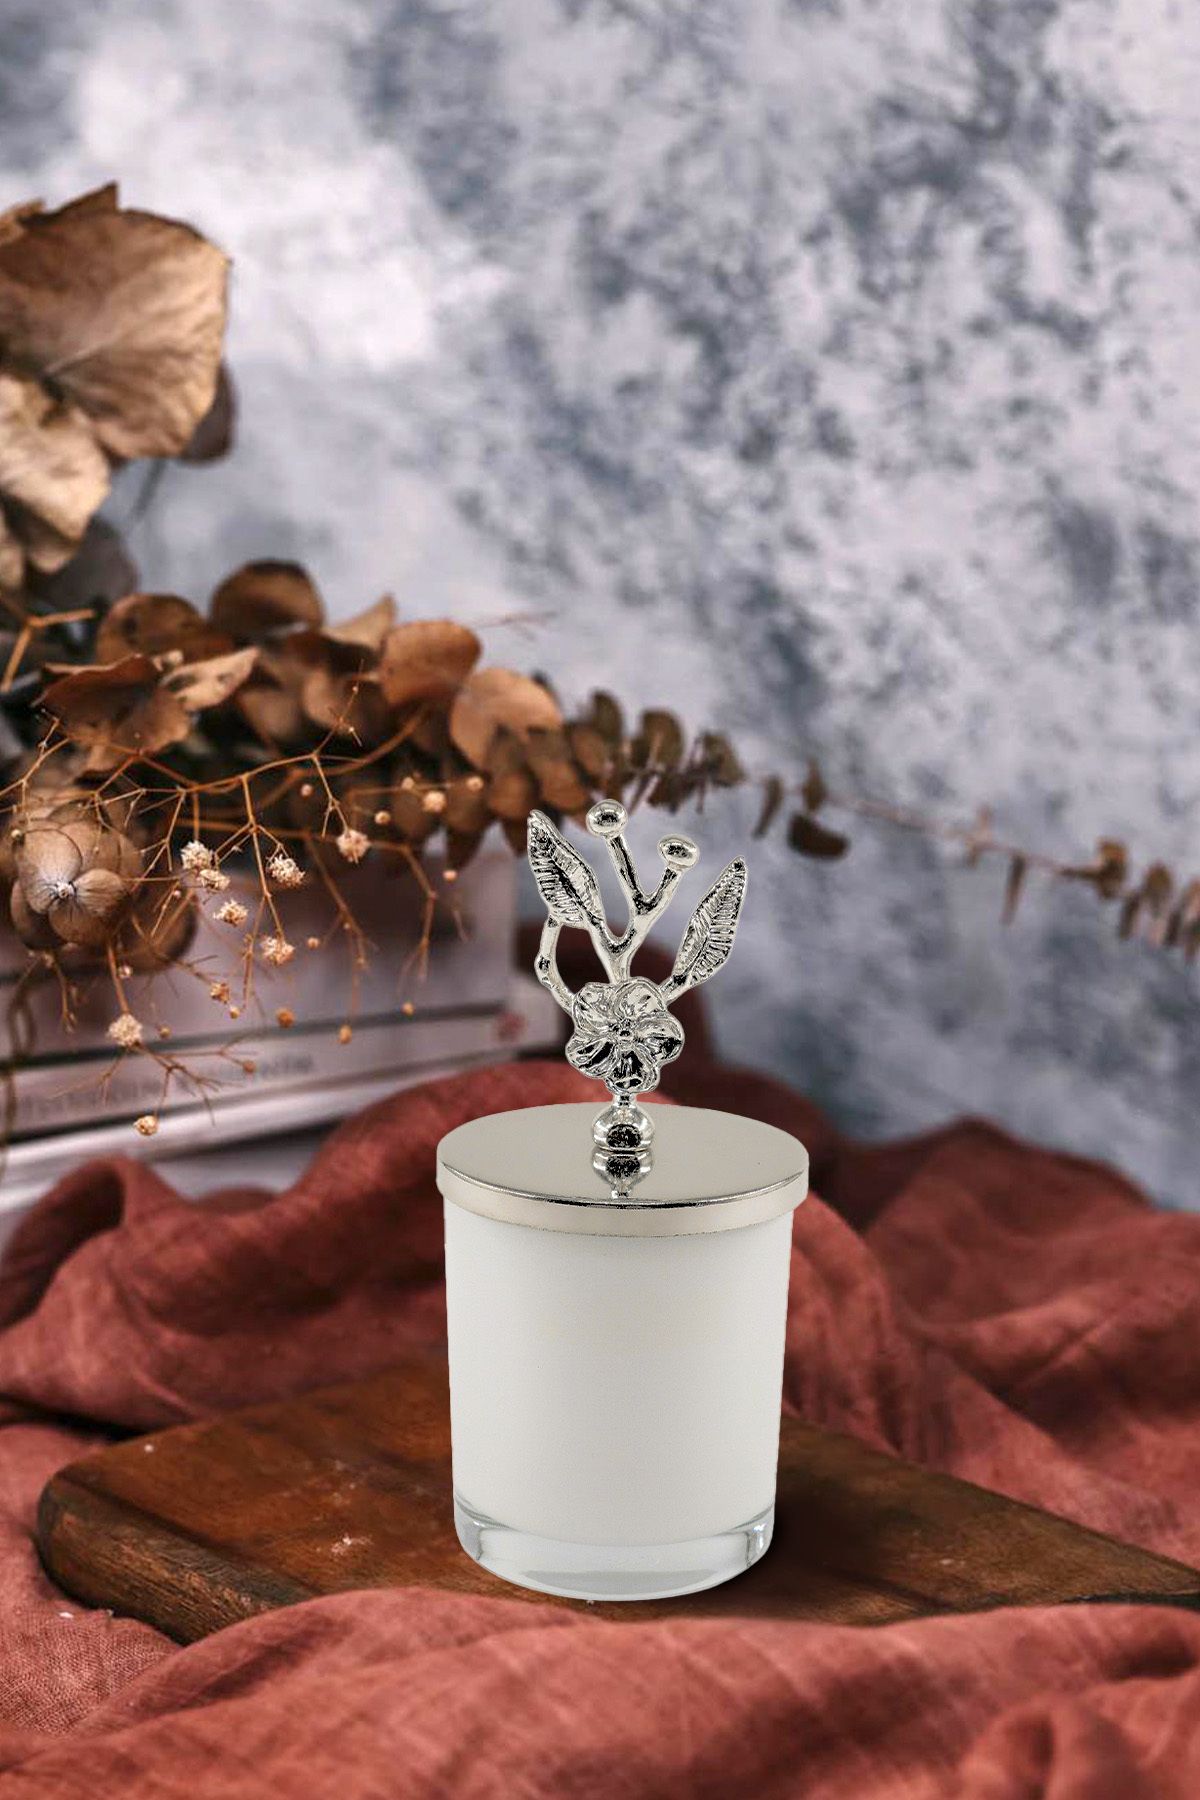 In Dream Gümüş Japon Çiçeği Tepelikli Vanilya Kokulu Beyaz Bardak Mum